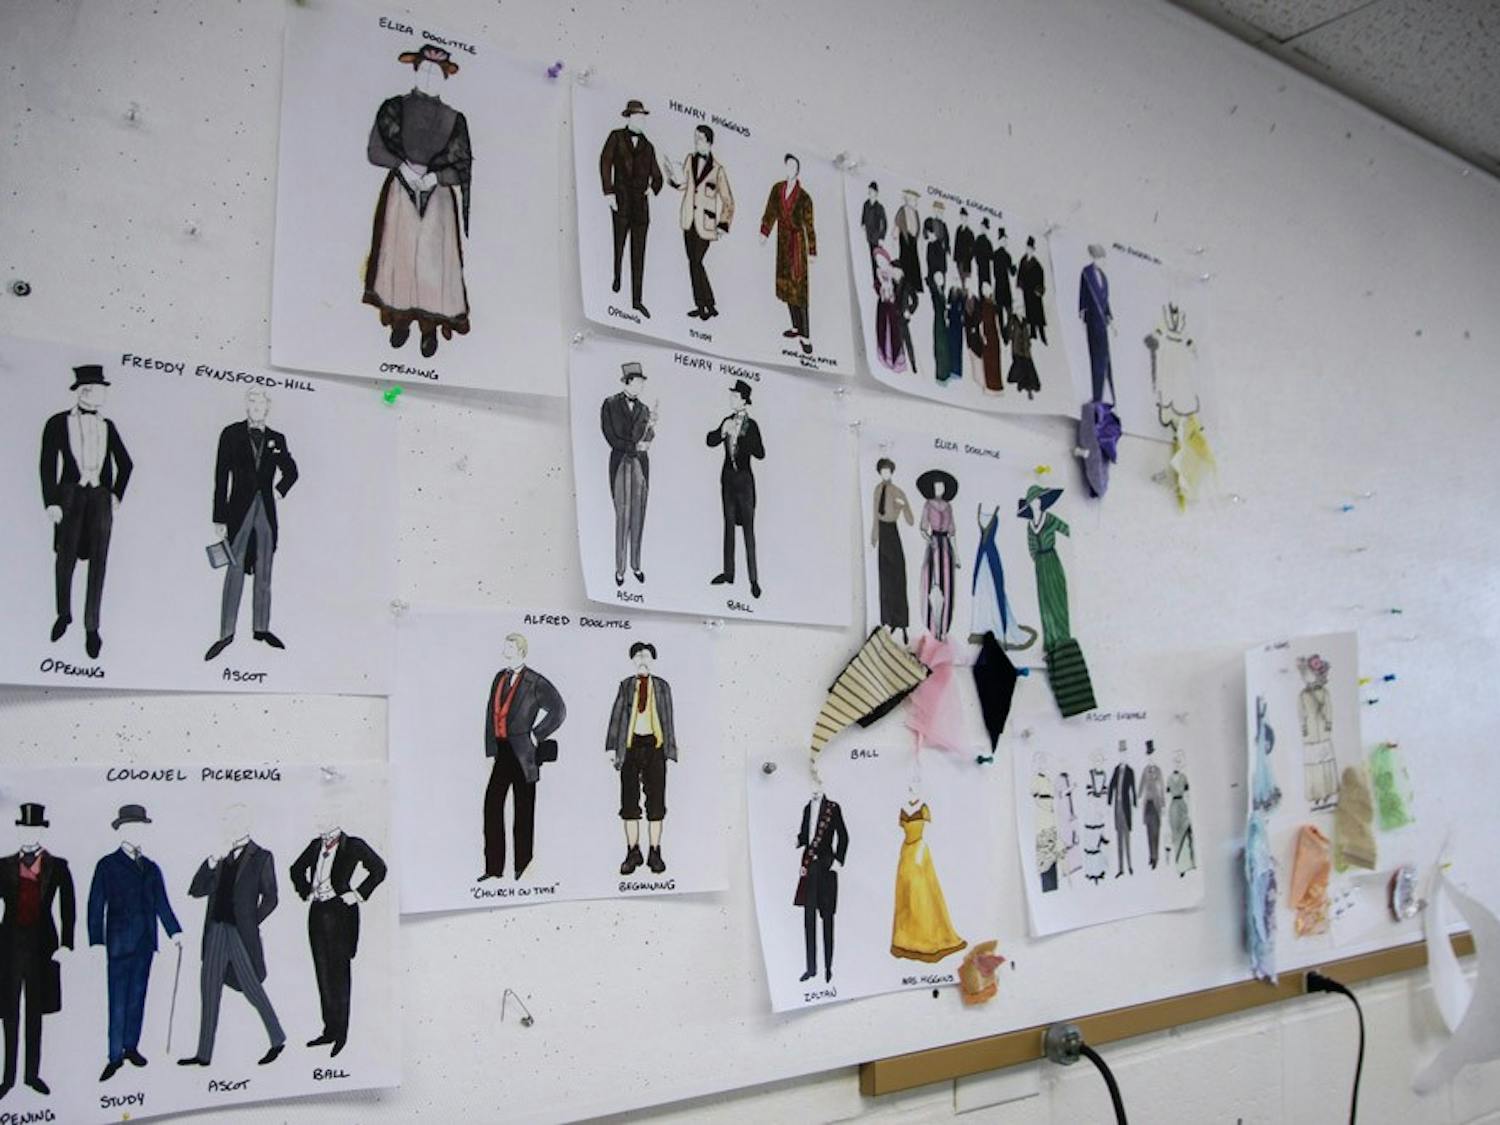 Costume designer Bethany Kasperek drew more than&nbsp;25 costume design ideas for “My Fair Lady.”